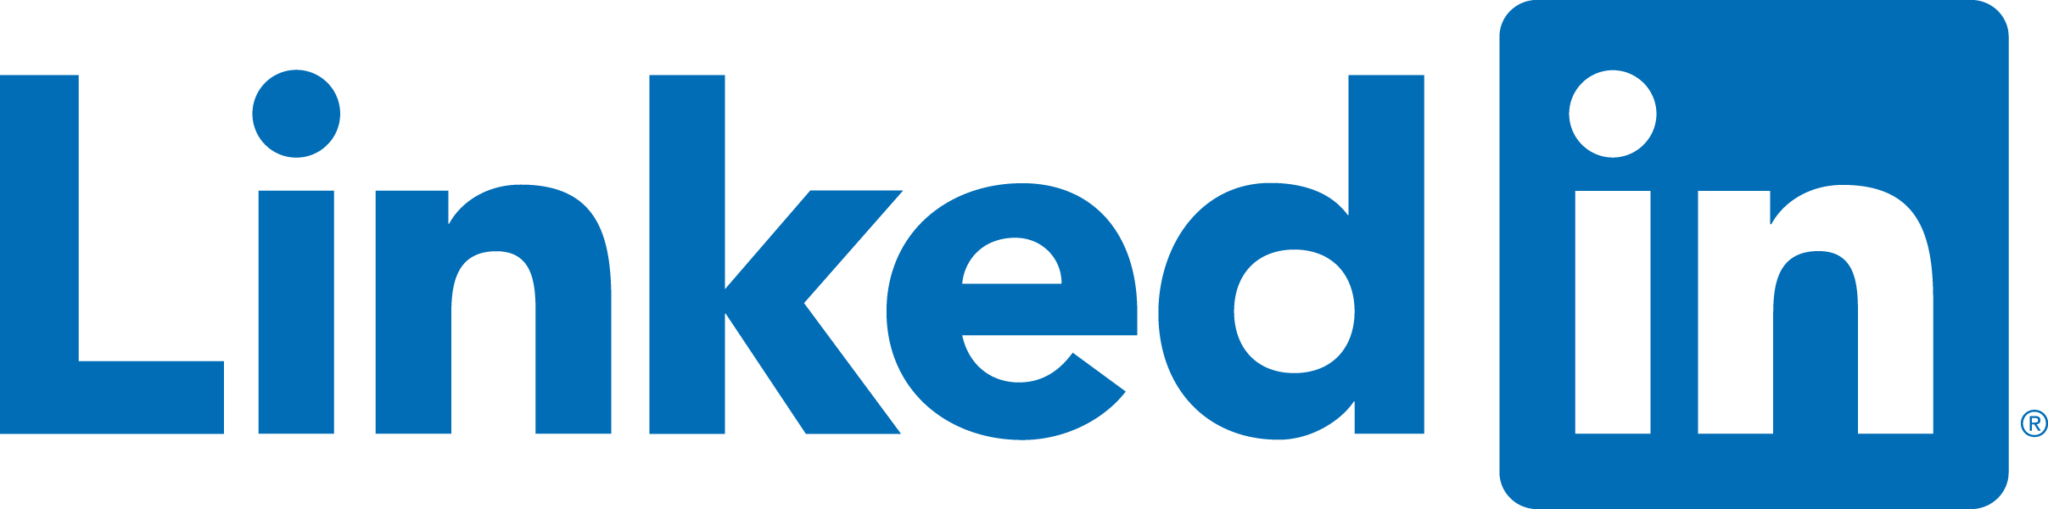 engagex logo